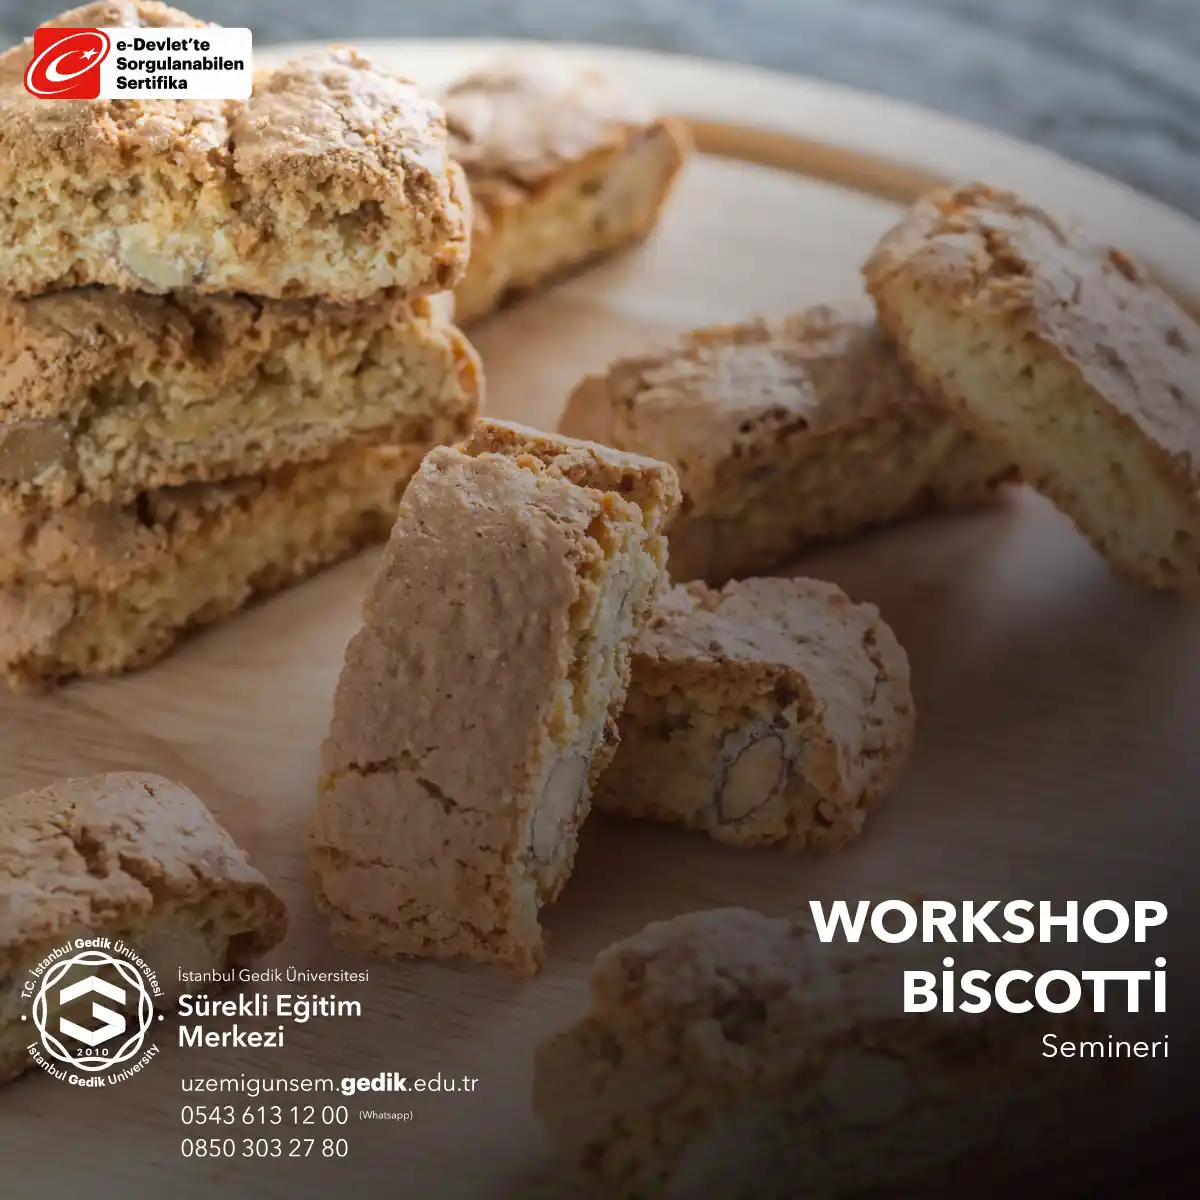 Biscotti yapımı workshop'u, tatlı severlerin bir araya gelerek, İtalyan mutfağının ünlü kurabiyesi biscotti'nin nasıl yapıldığını öğrenmek için düzenlenen interaktif bir etkinliktir.